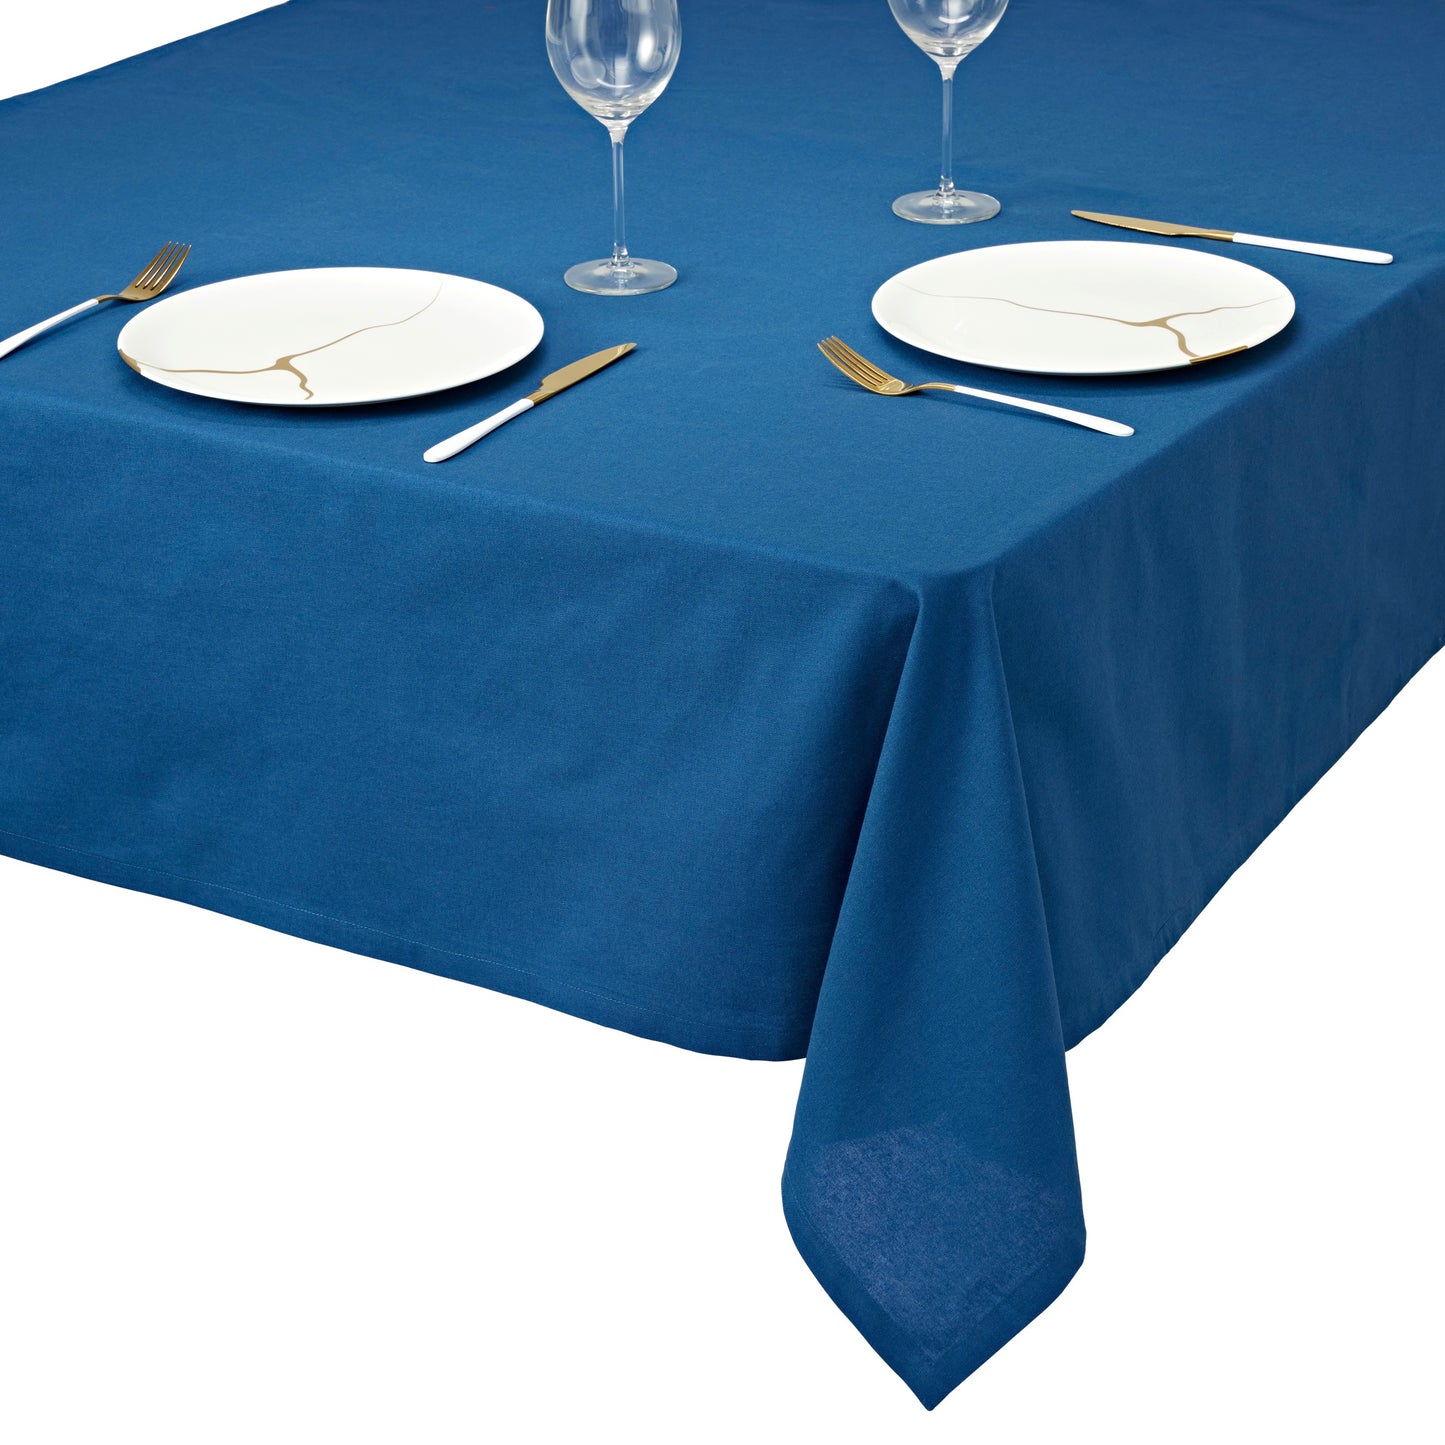 Tischdecke aus 100% Baumwolle, beste Qualität in modernem Design, Tischtuch  Maritim-Hanseatischer Look, faltenfreies Fallen (140 x 180 cm / 140 x 220 cm, blau)